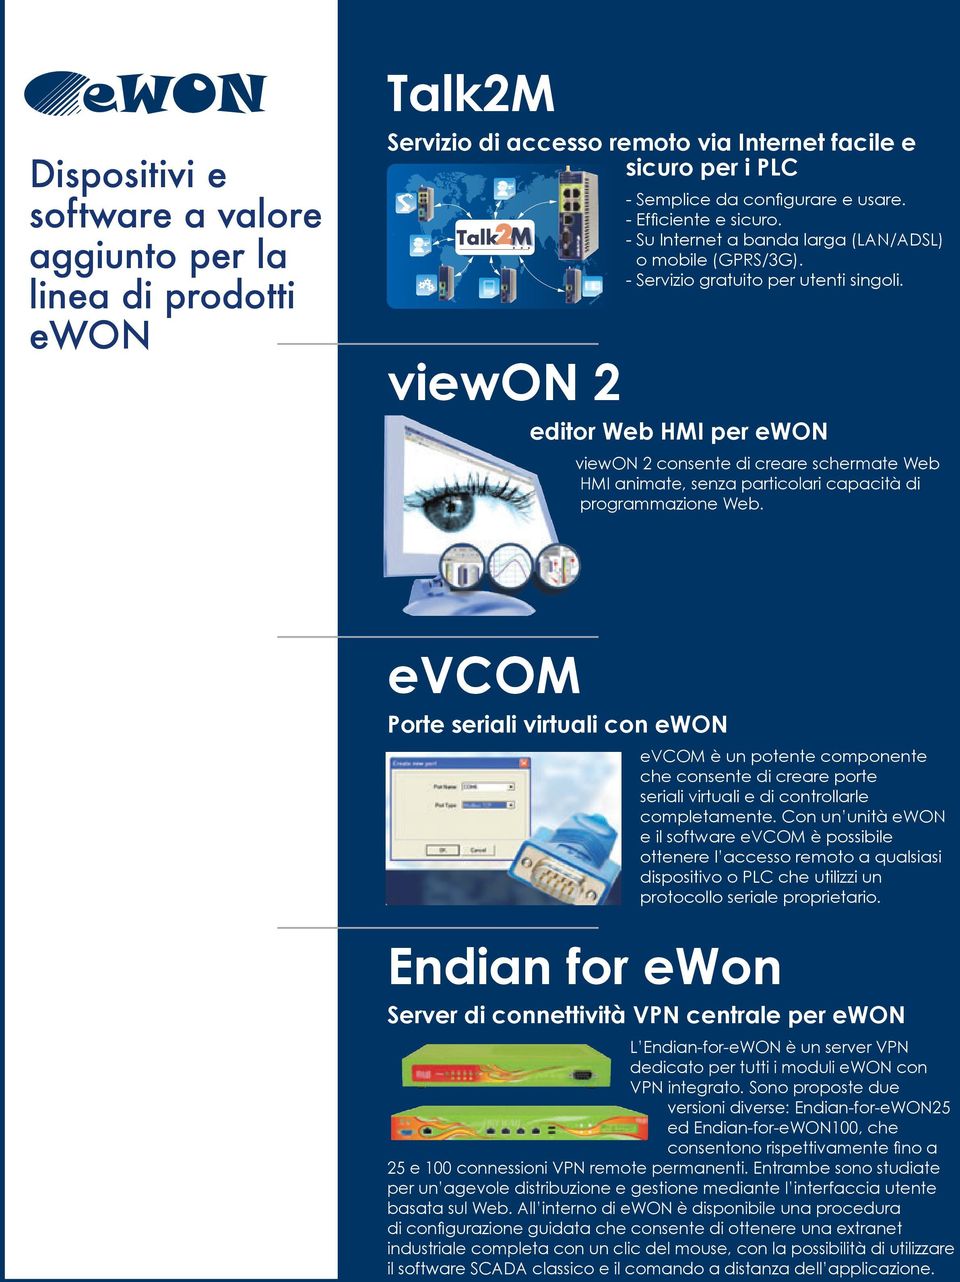 editor Web HMI per ewon viewon 2 consente di creare schermate Web HMI animate, senza particolari capacità di programmazione Web.